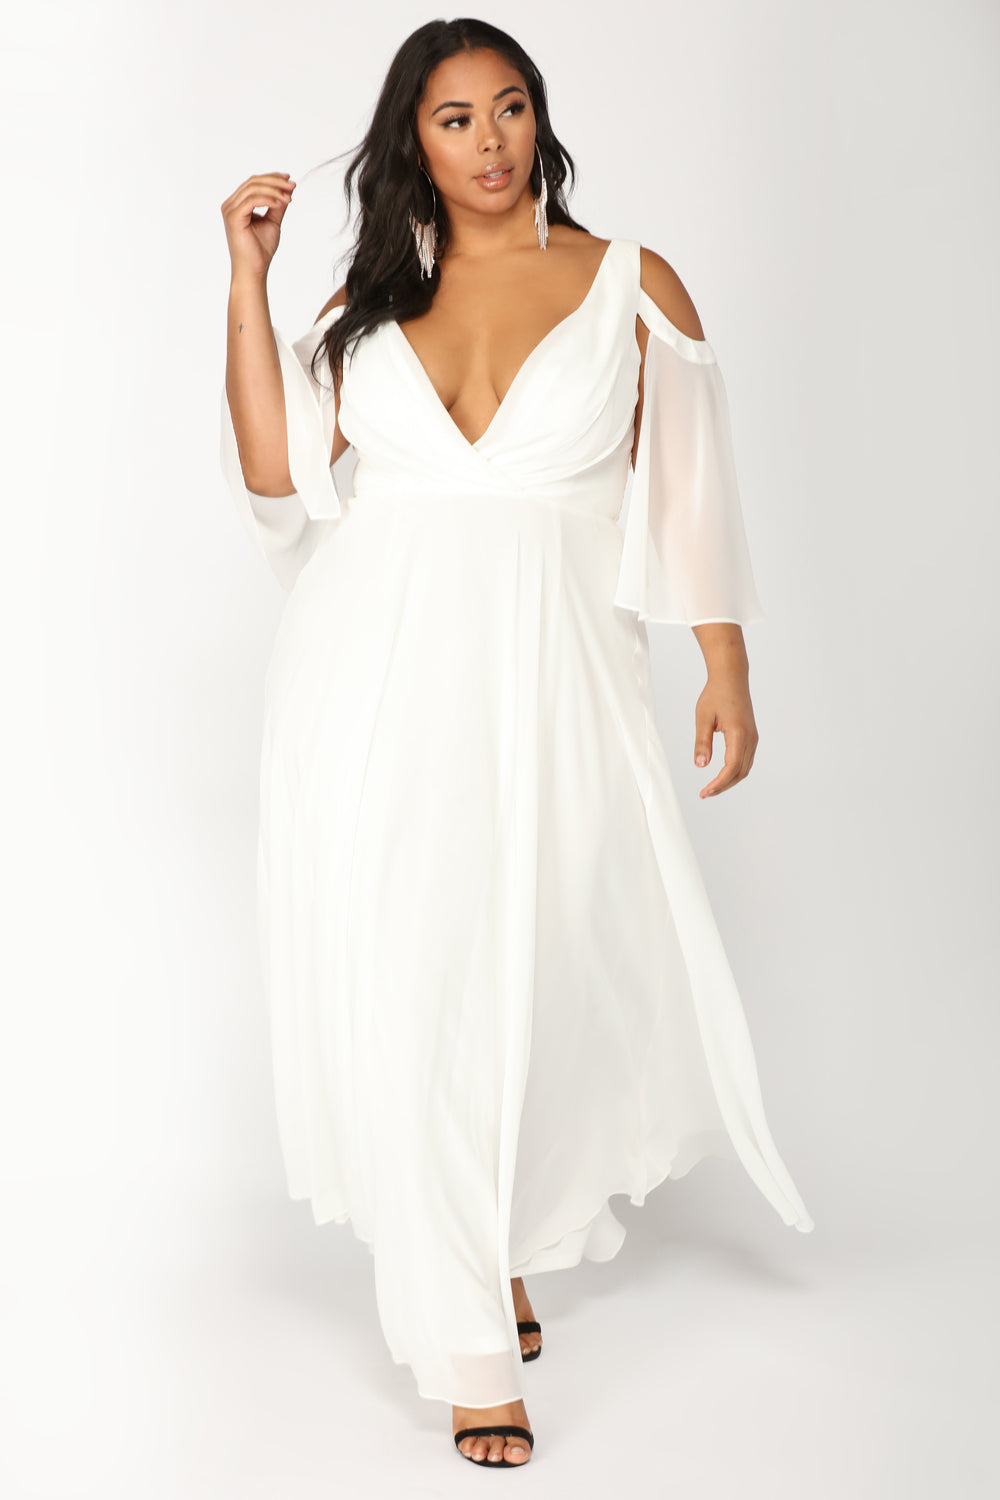 Debutante Ball Chiffon Dress - White